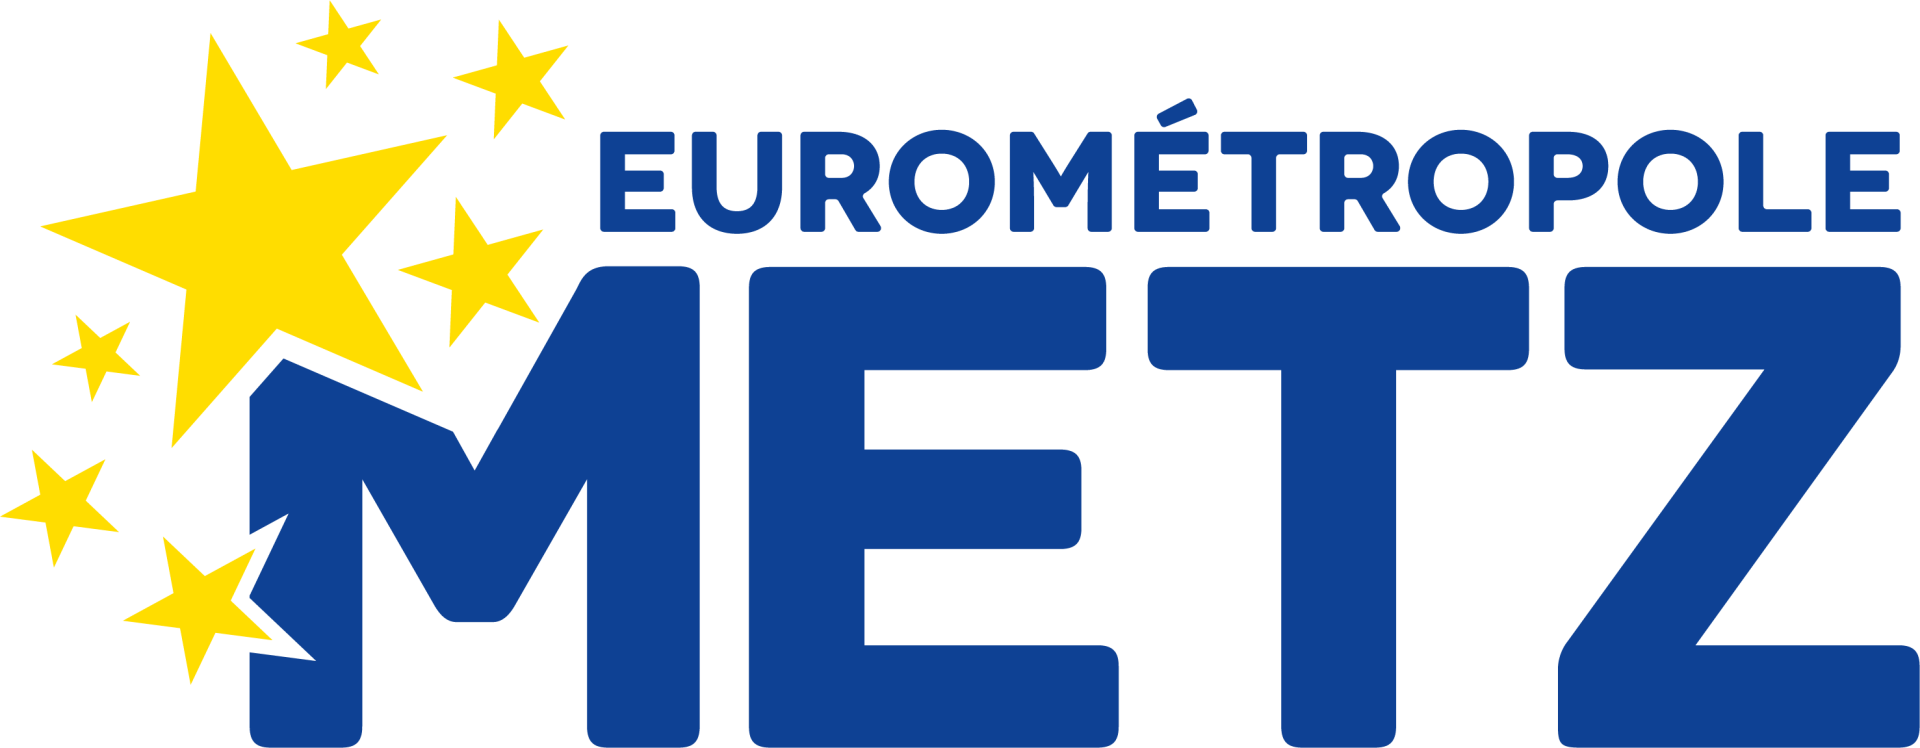 "Eurométropole de Metz"